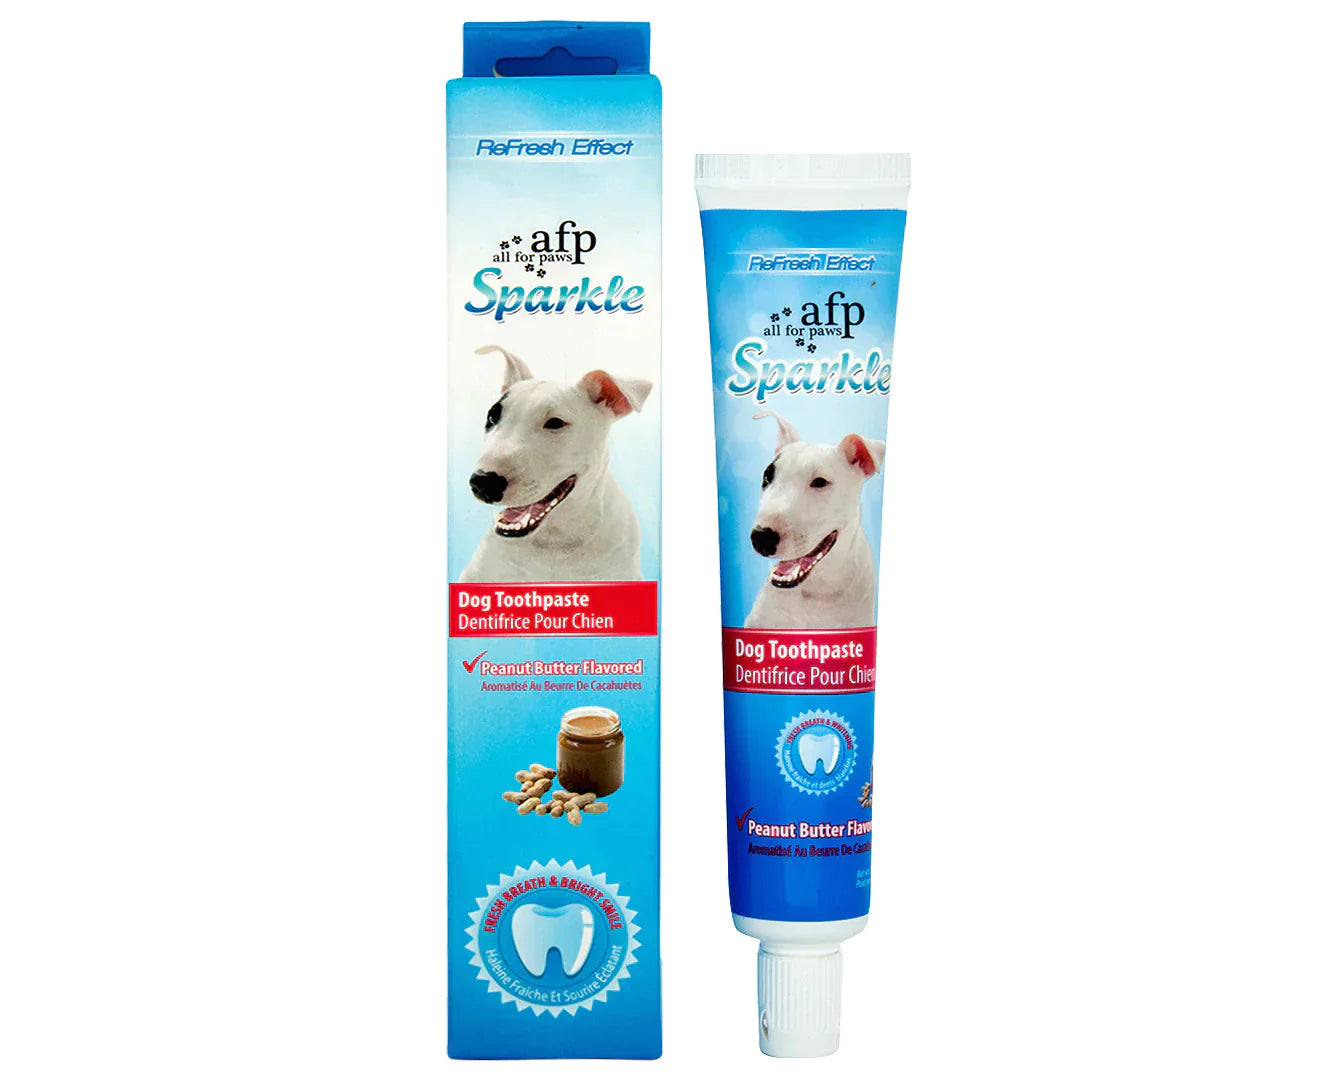 Dog Toothpaste Sparkle Brush Finger Kit - Amazing Amazon